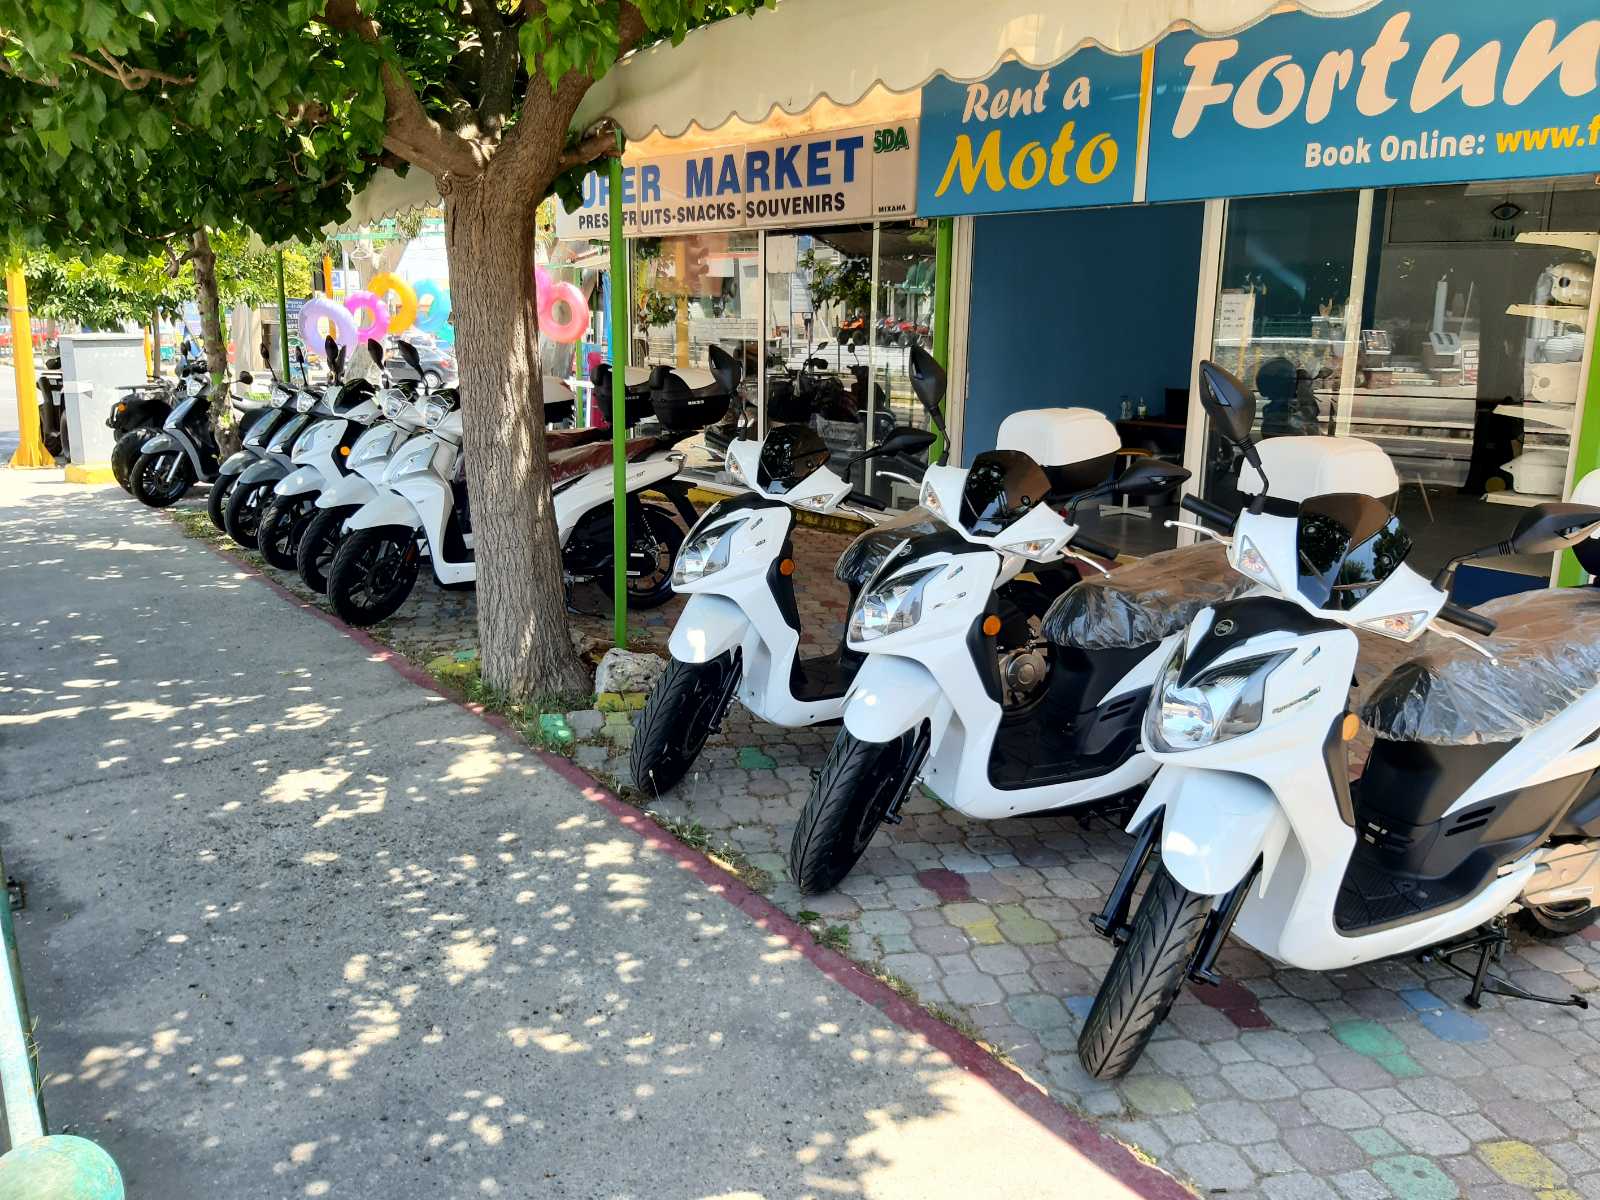 Fortuna moto Faliraki rhodes rent a motorbike quad